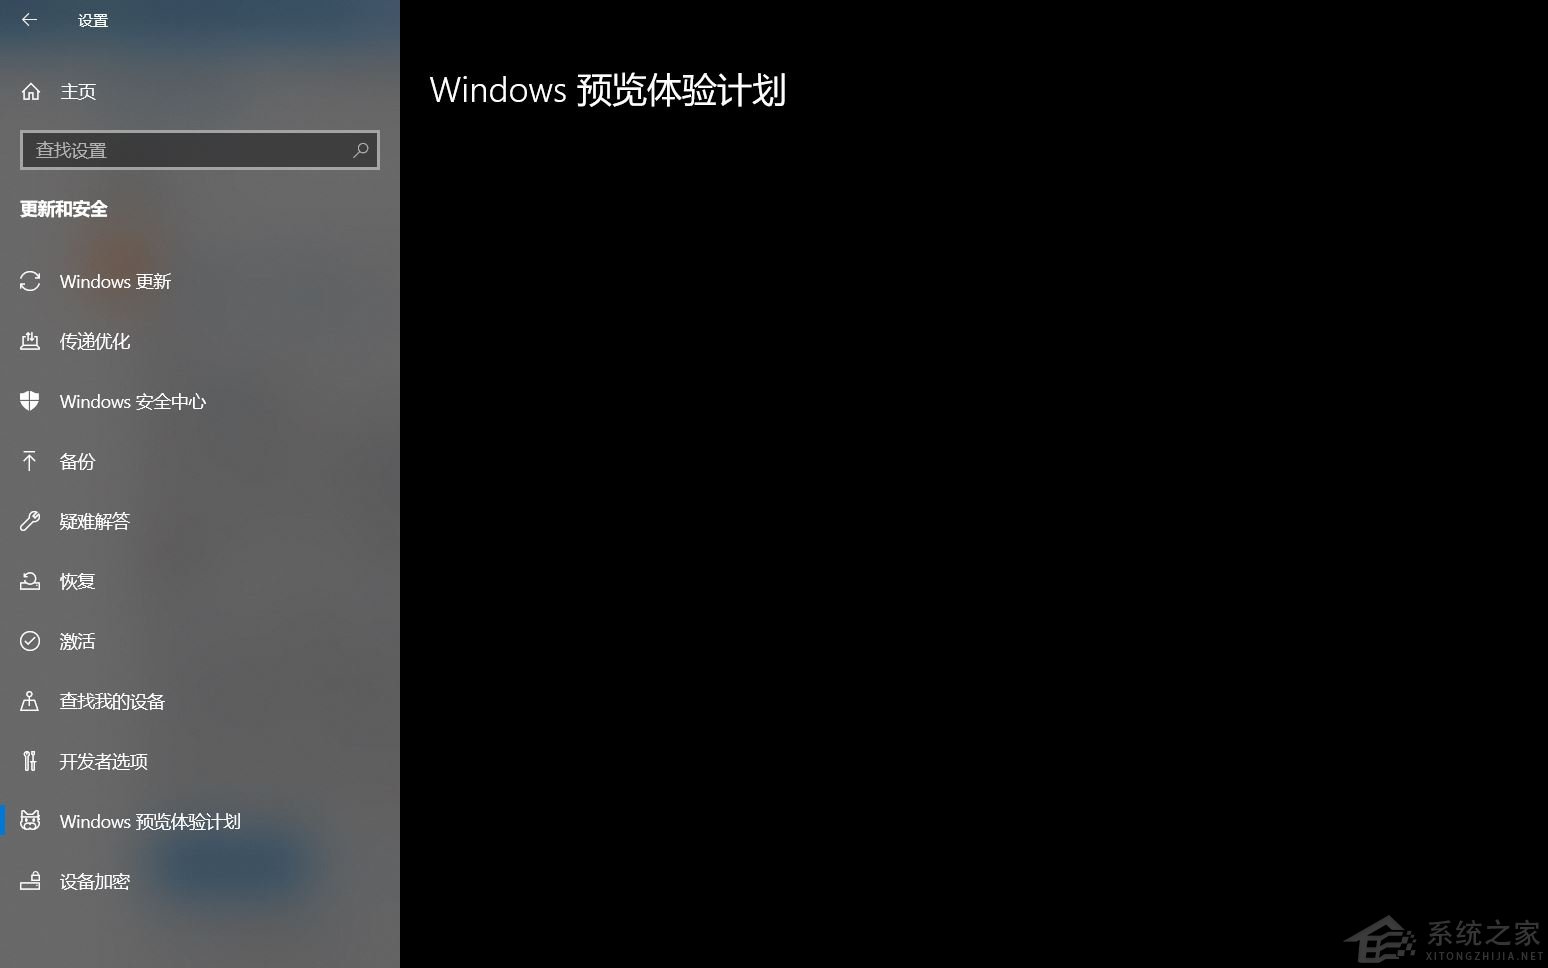 加入Windows预览体验计划失败错误码0x8